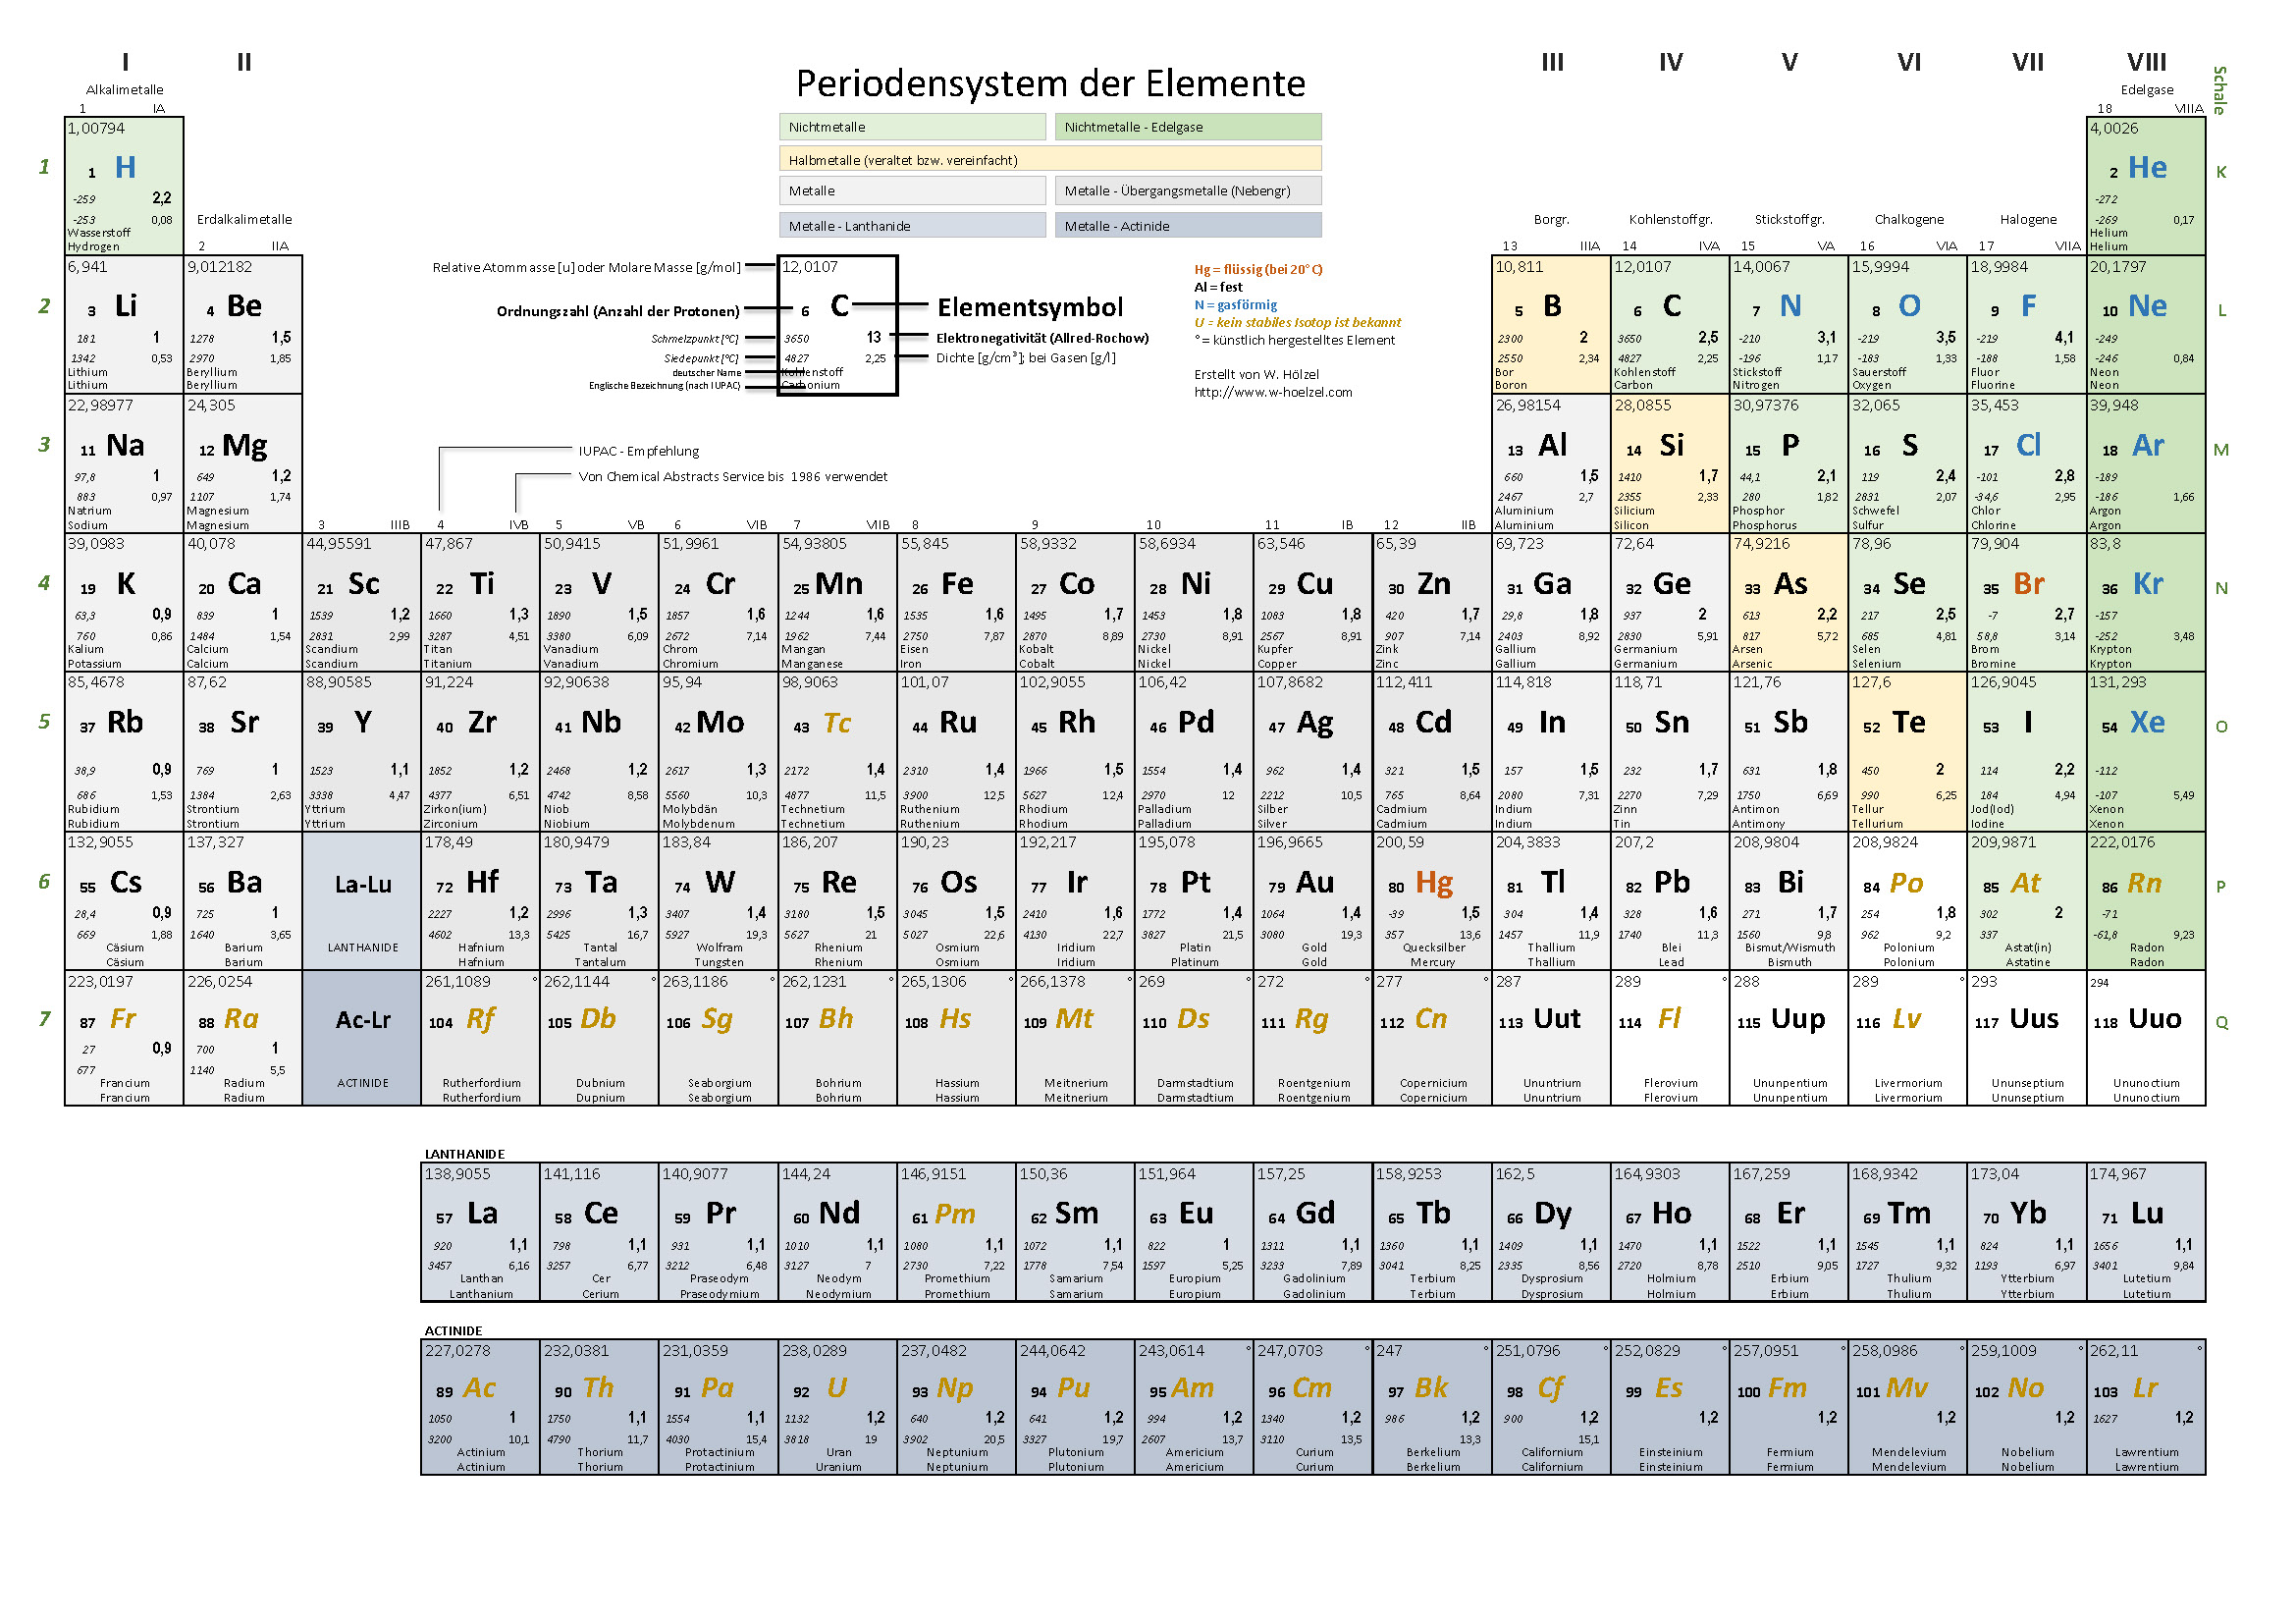 Periodensystem der Elemente - Einteilung der Metalle und Nichtmetalle